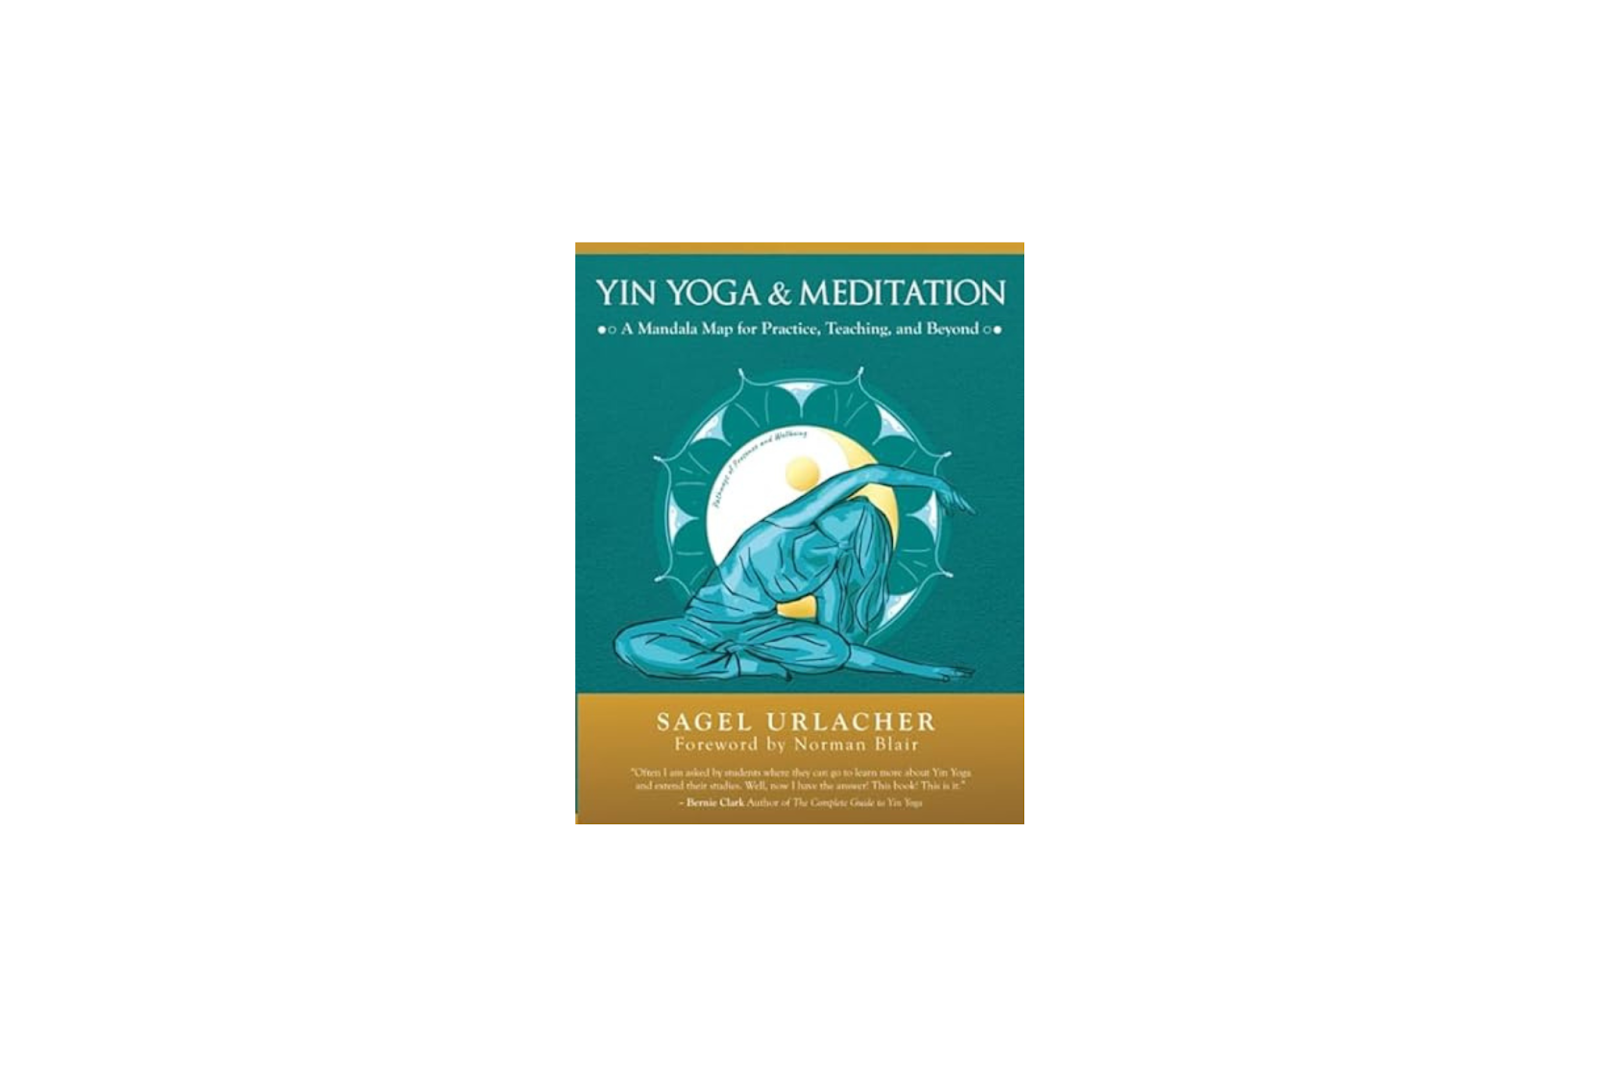 Yin Yoga and Meditation by Sagel Urlacher